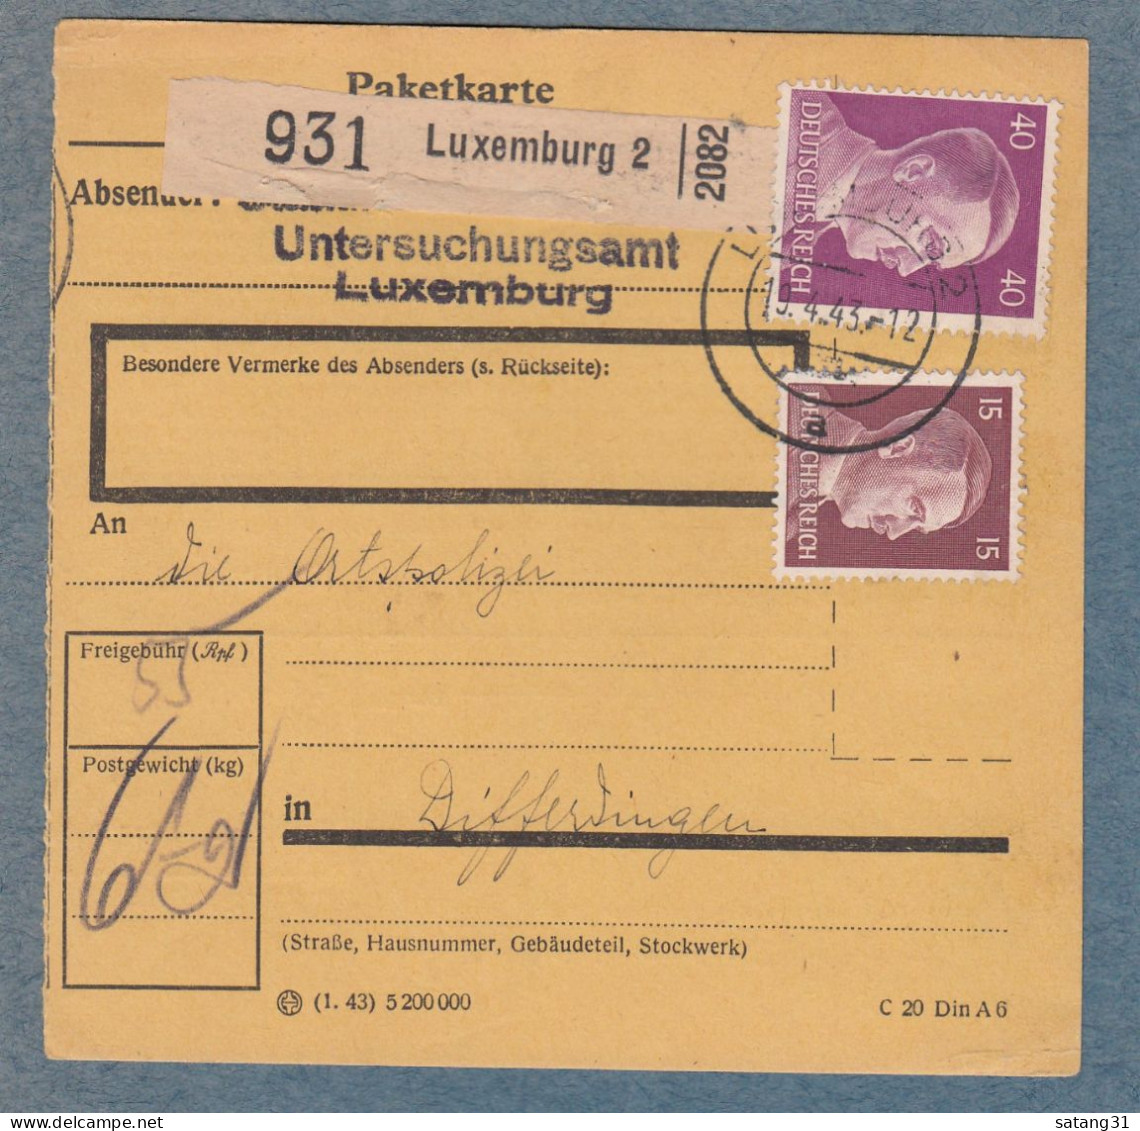 PAKETKARTE AUS DEM UNTERSUCHUNGSAMT IN LUXEMBURG AN DIE ORTSPOLIZEI IN DIFFERDINGEN. - 1940-1944 Deutsche Besatzung